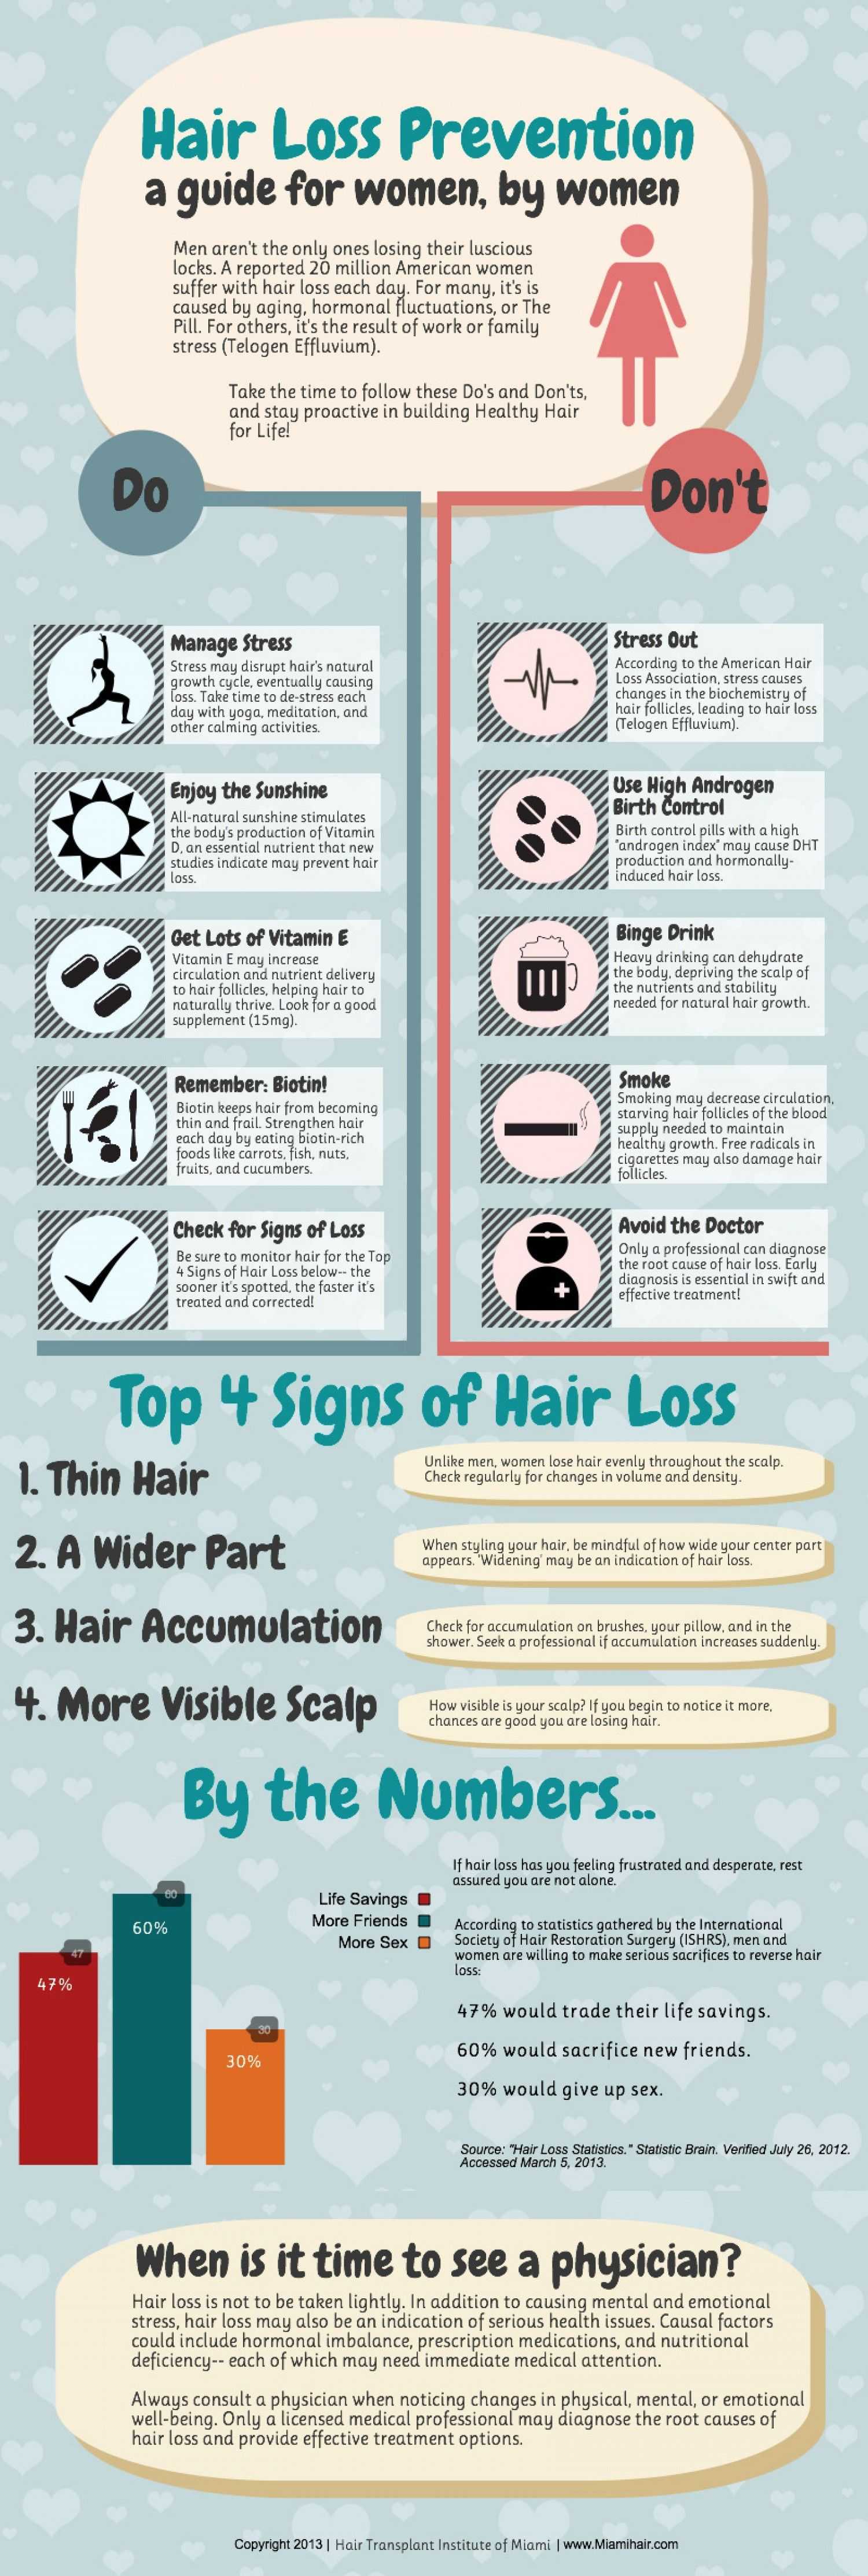 Hair Loss Prevention For Women